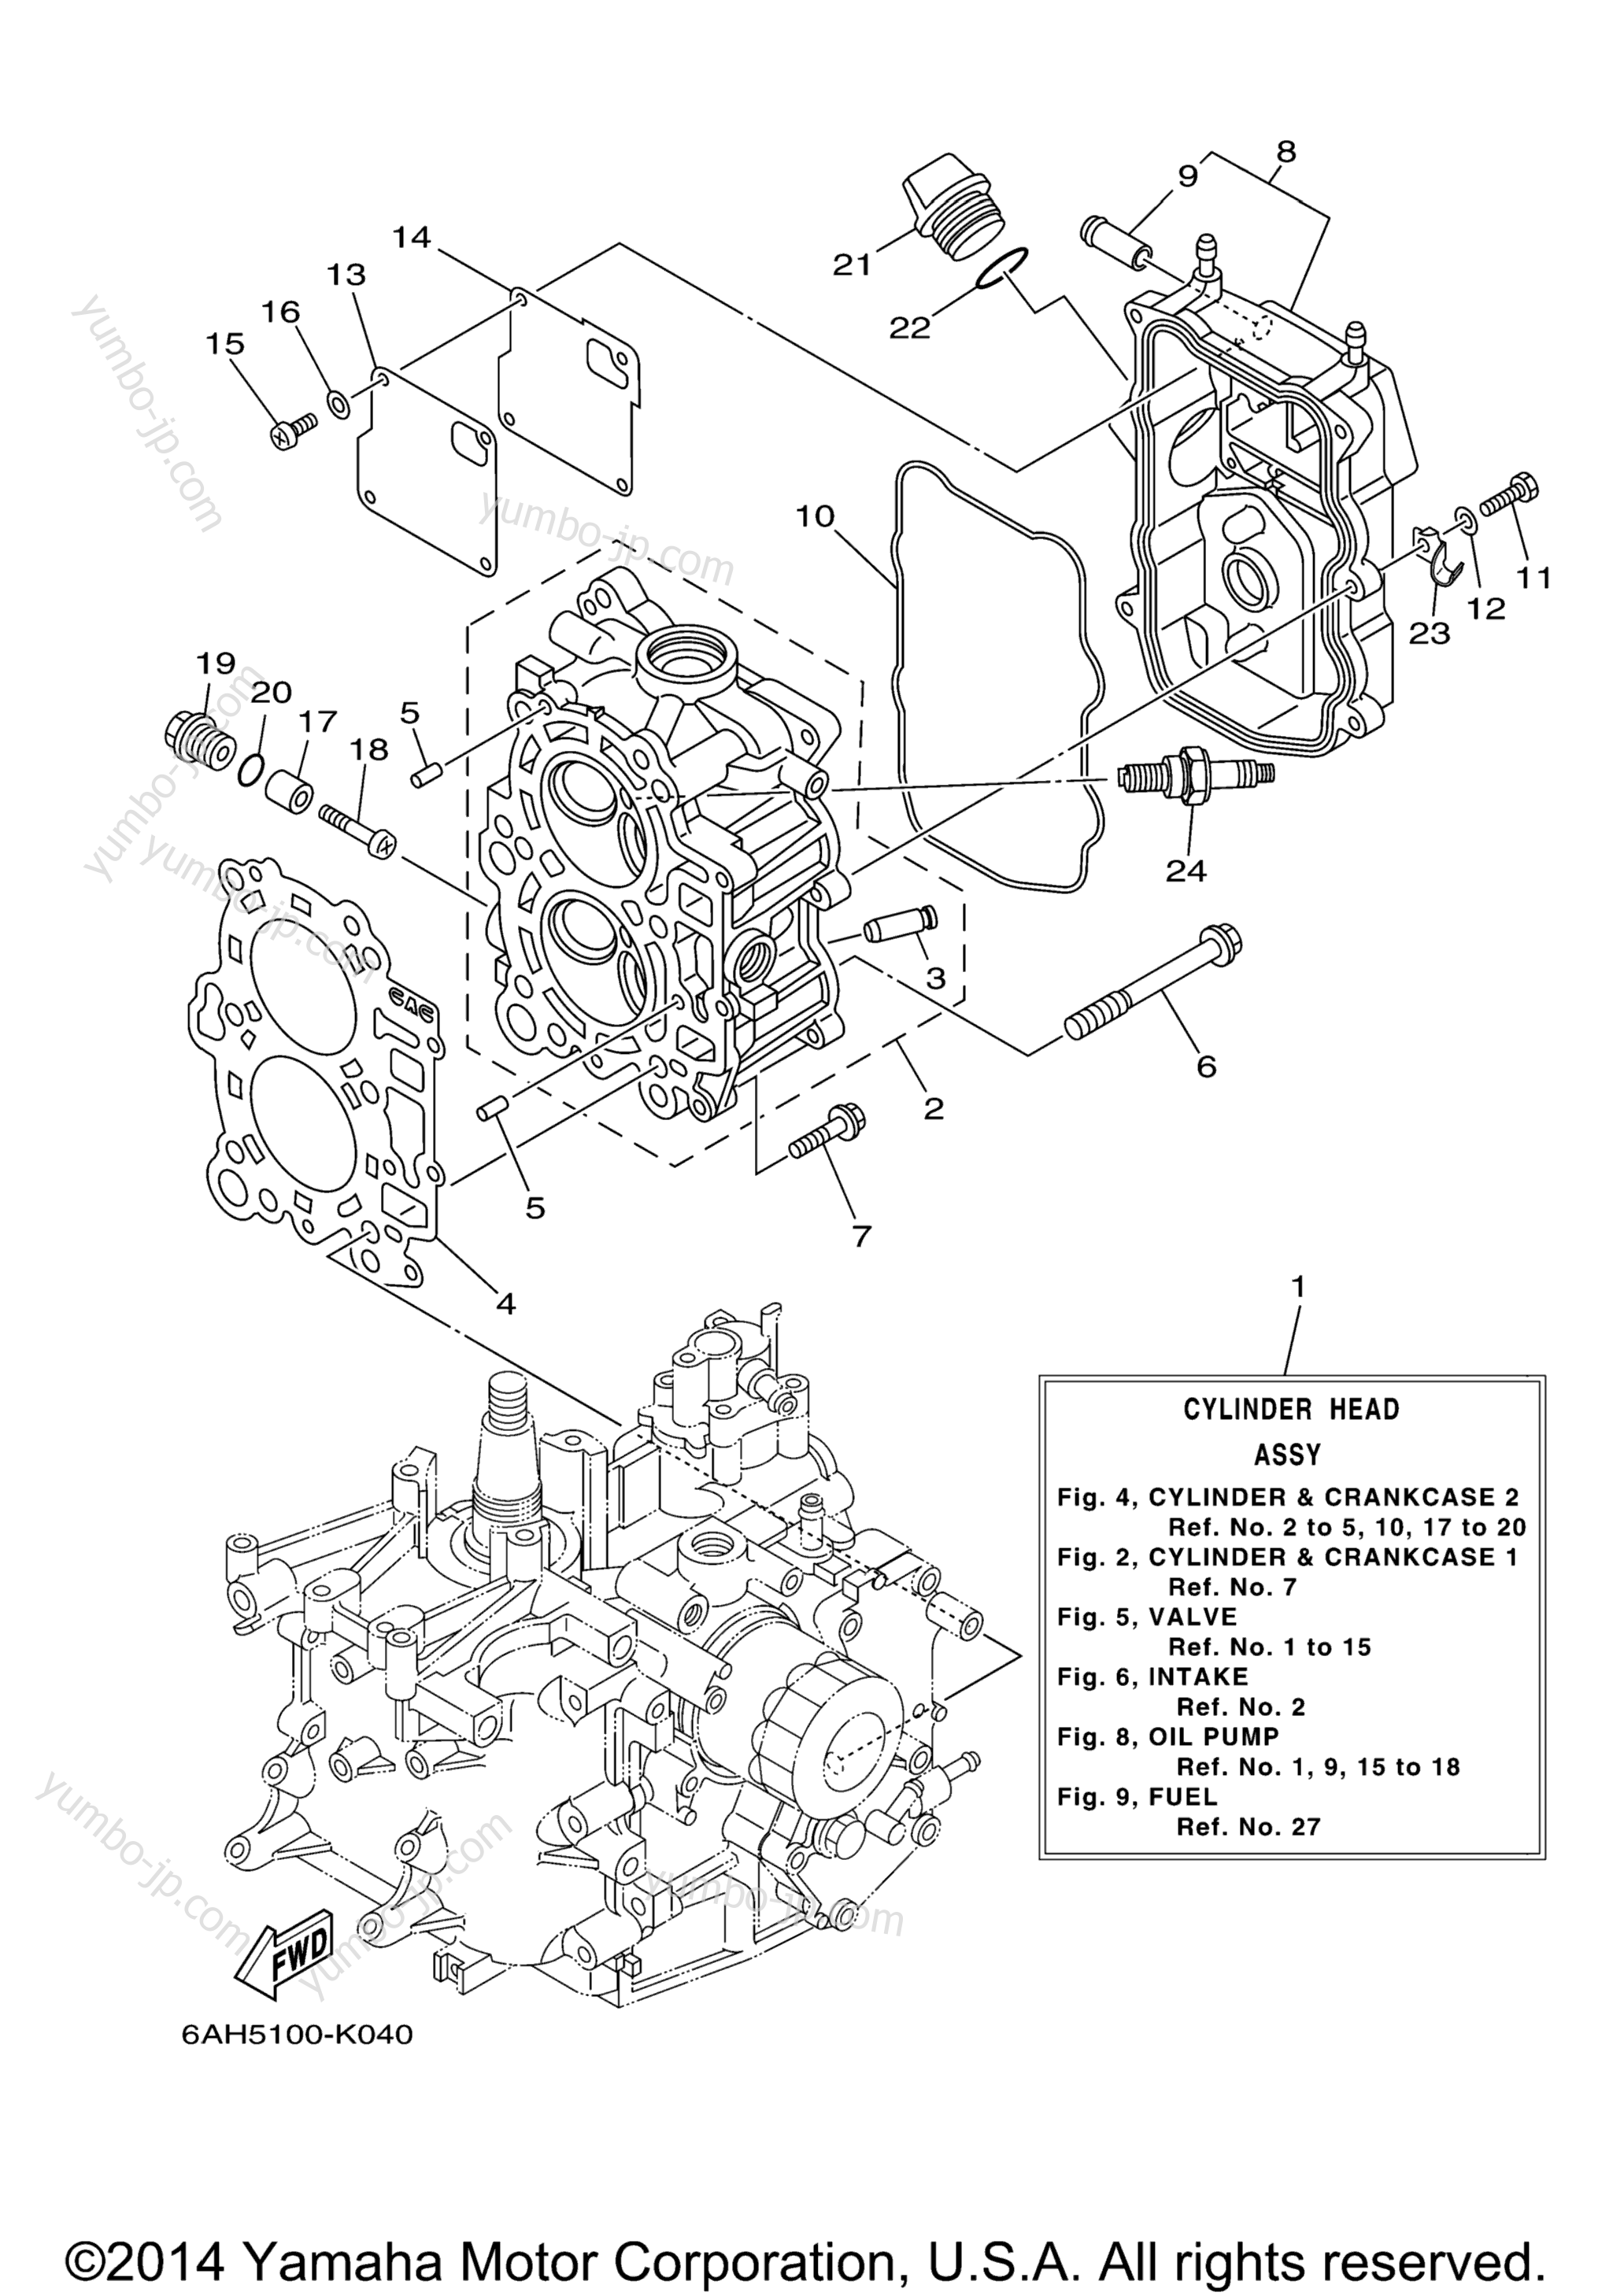 Cylinder Crankcase 2 для лодочных моторов YAMAHA F15LPHA_04 (0411) 2006 г.